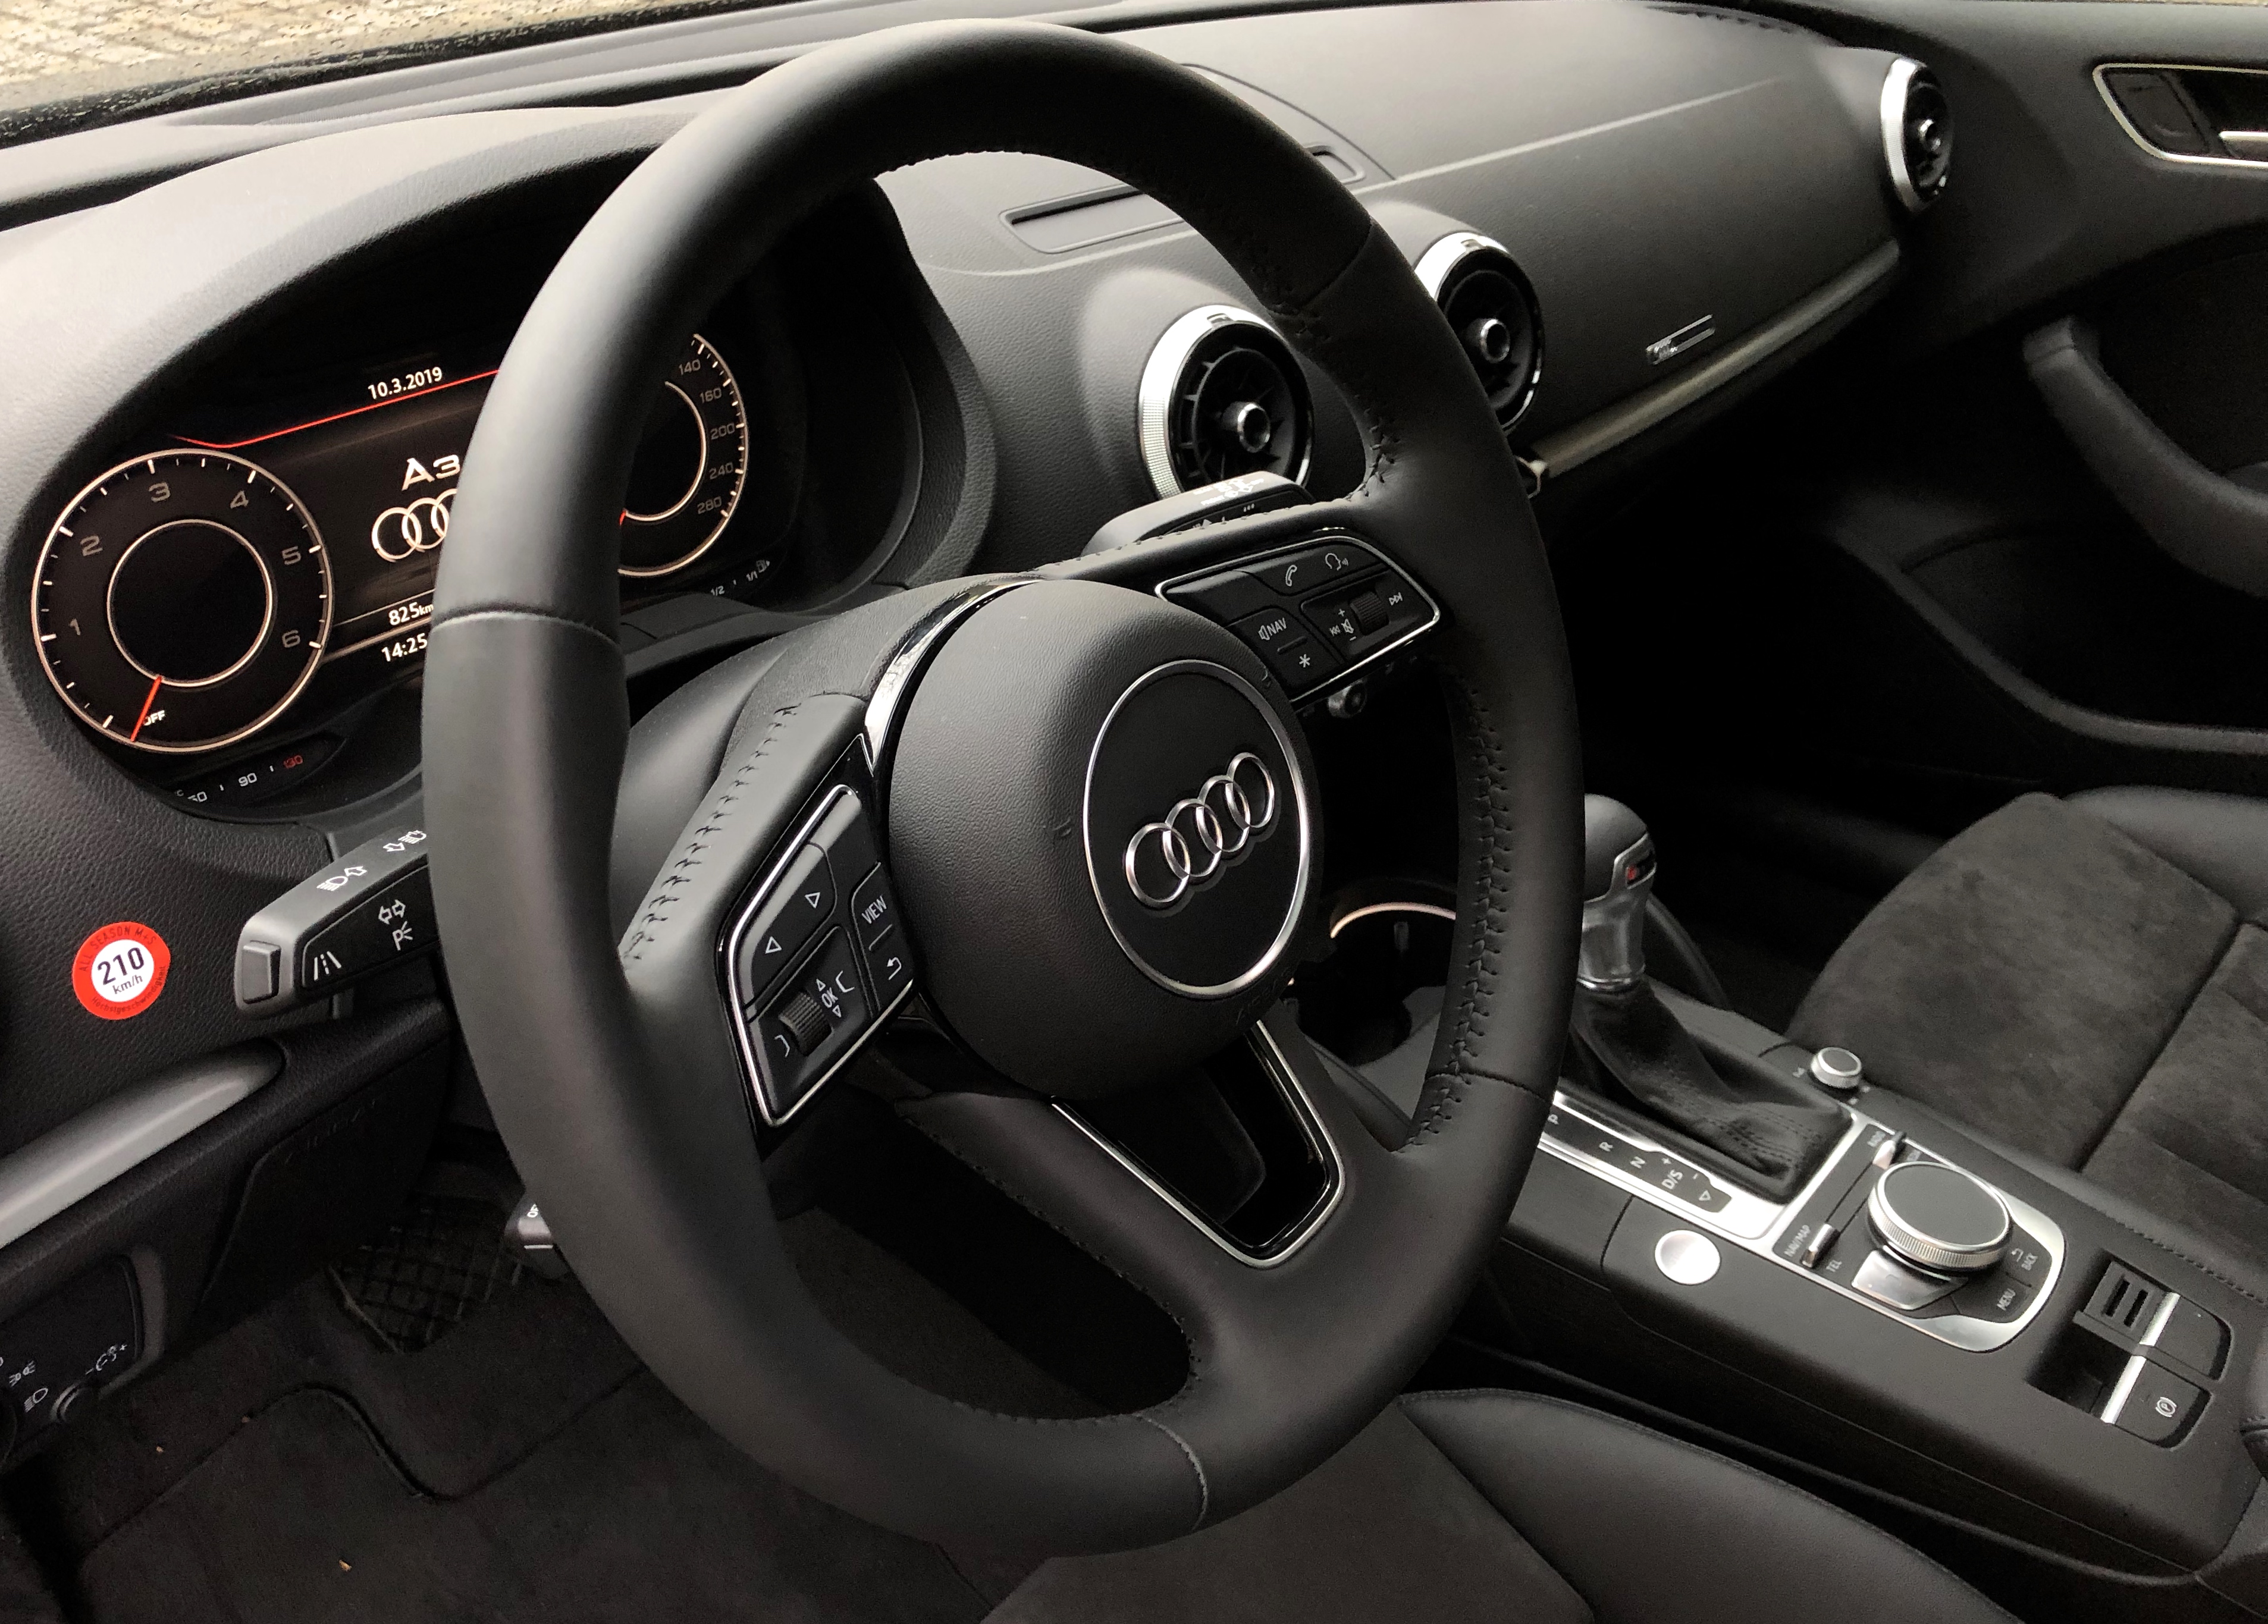 		Audi on demand mit 30% Rabatt buchen
	